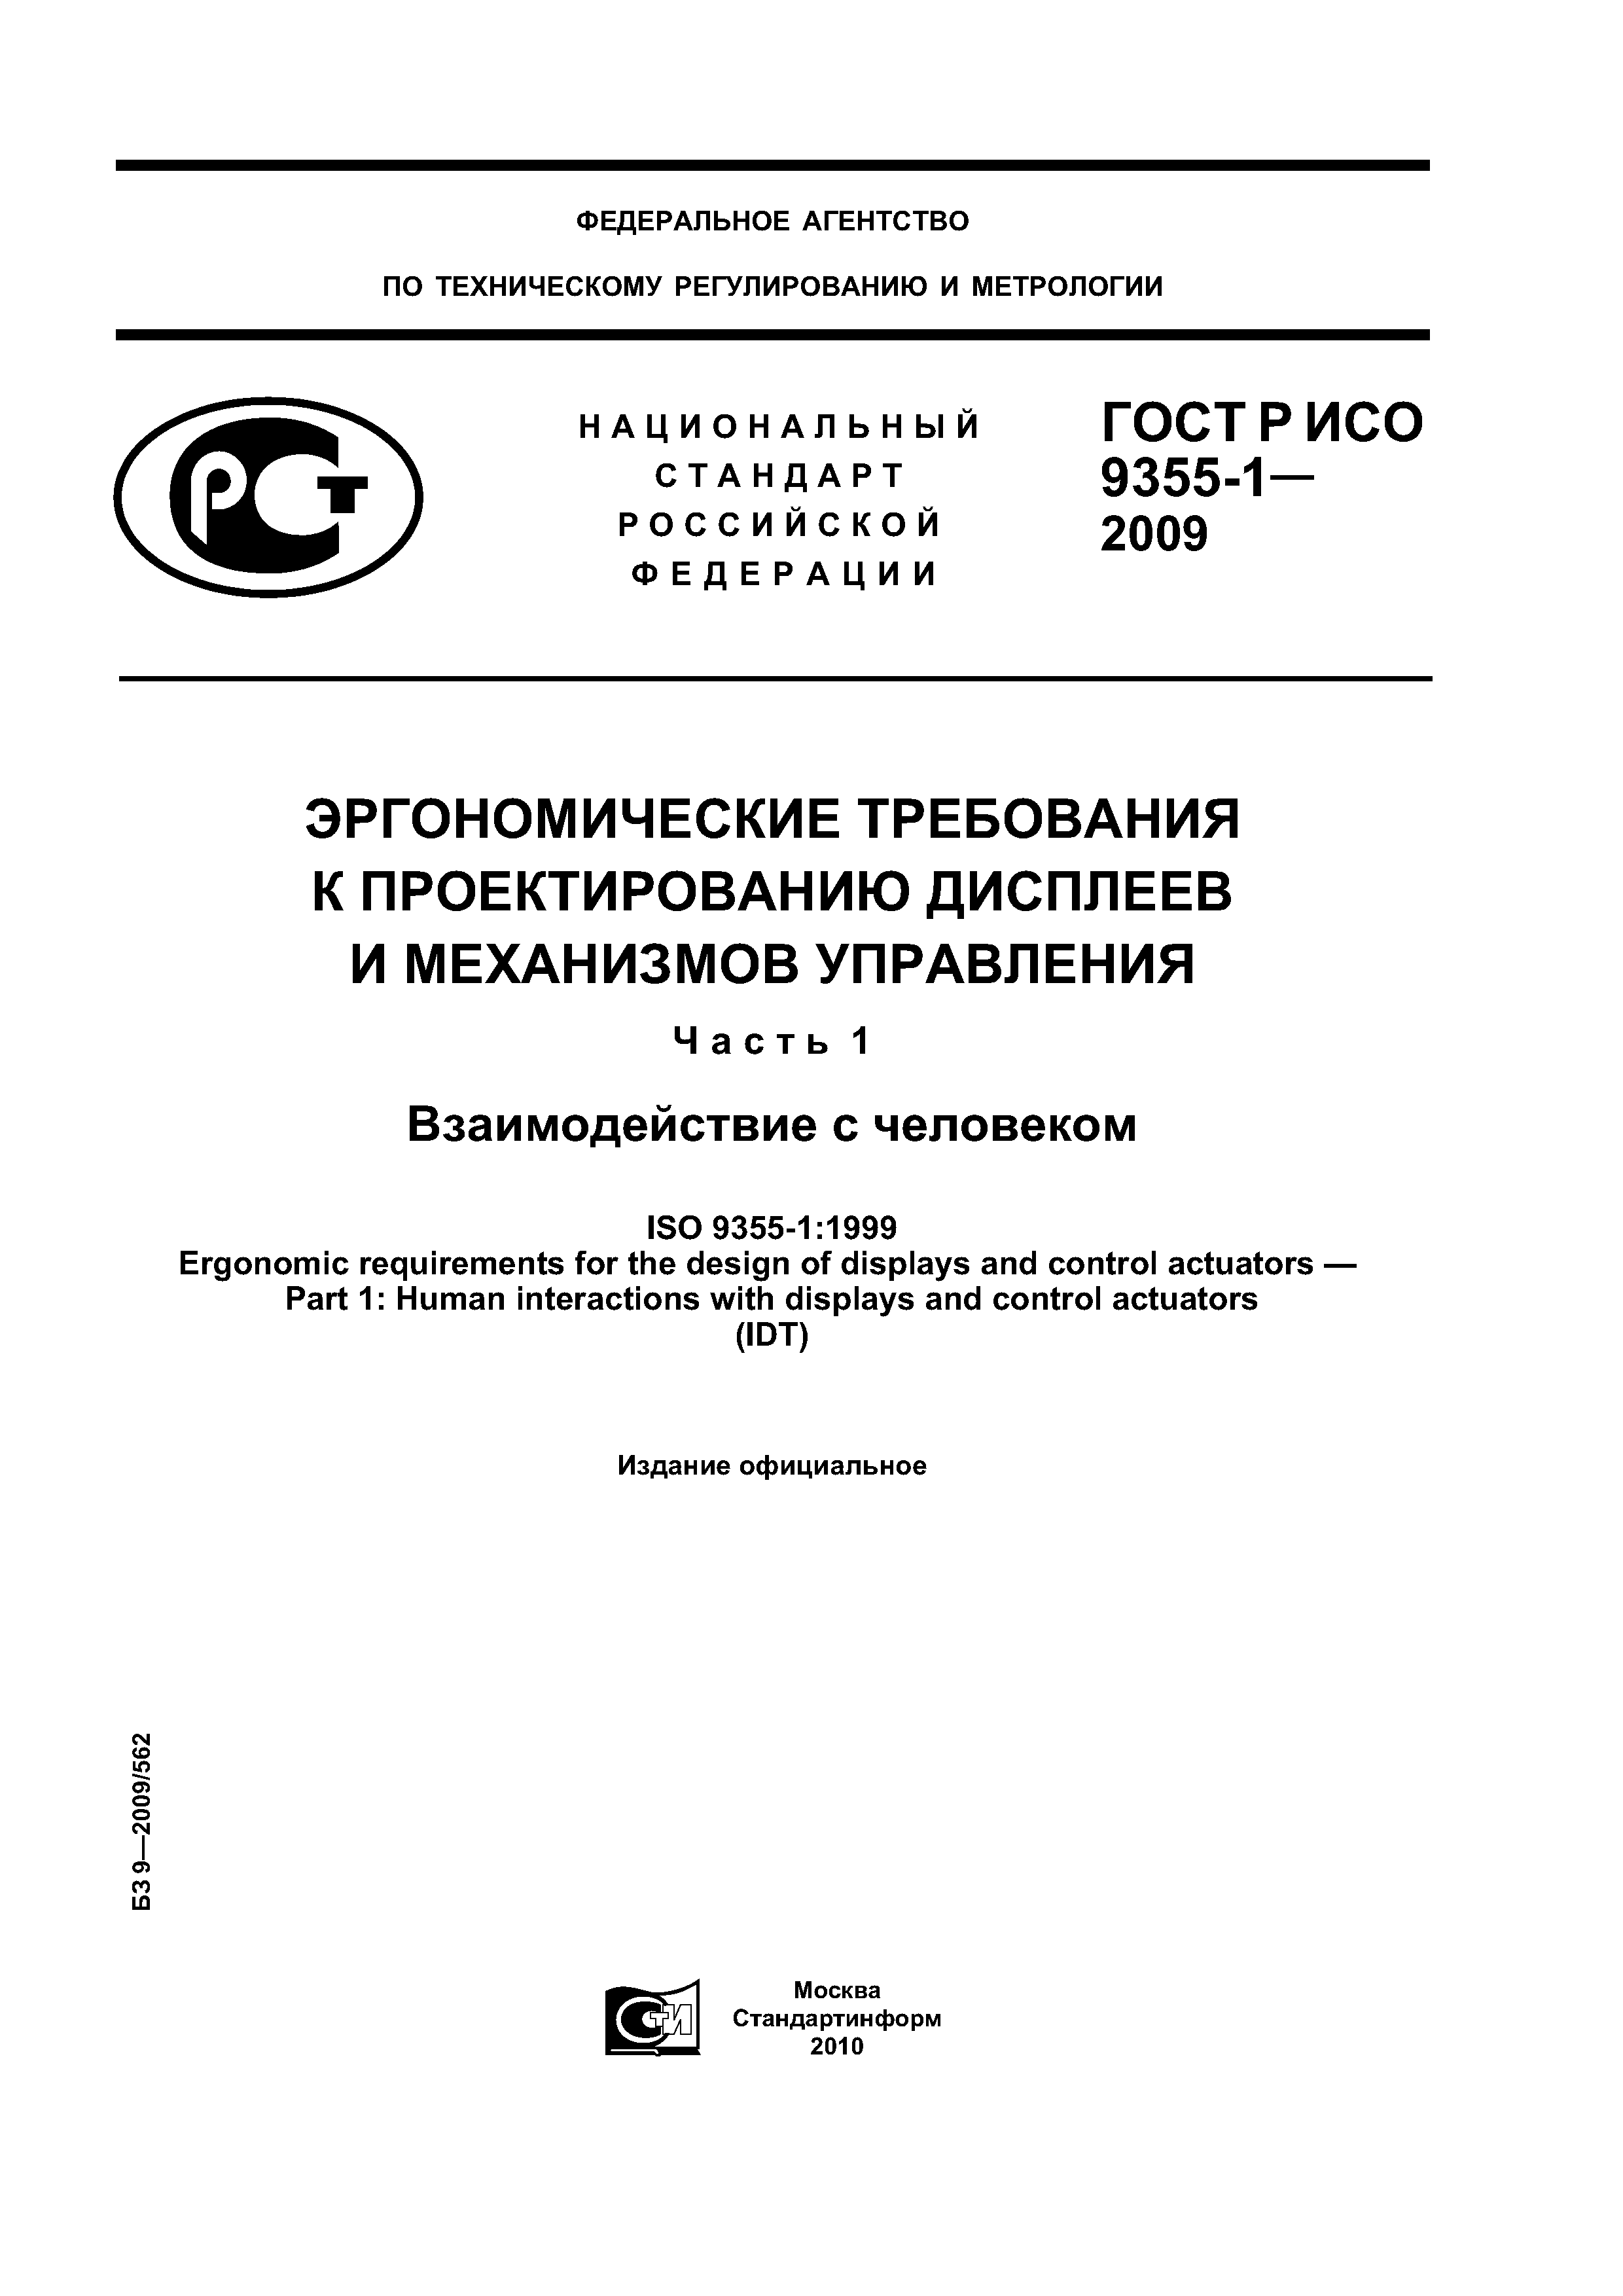 ГОСТ Р ИСО 9355-1-2009